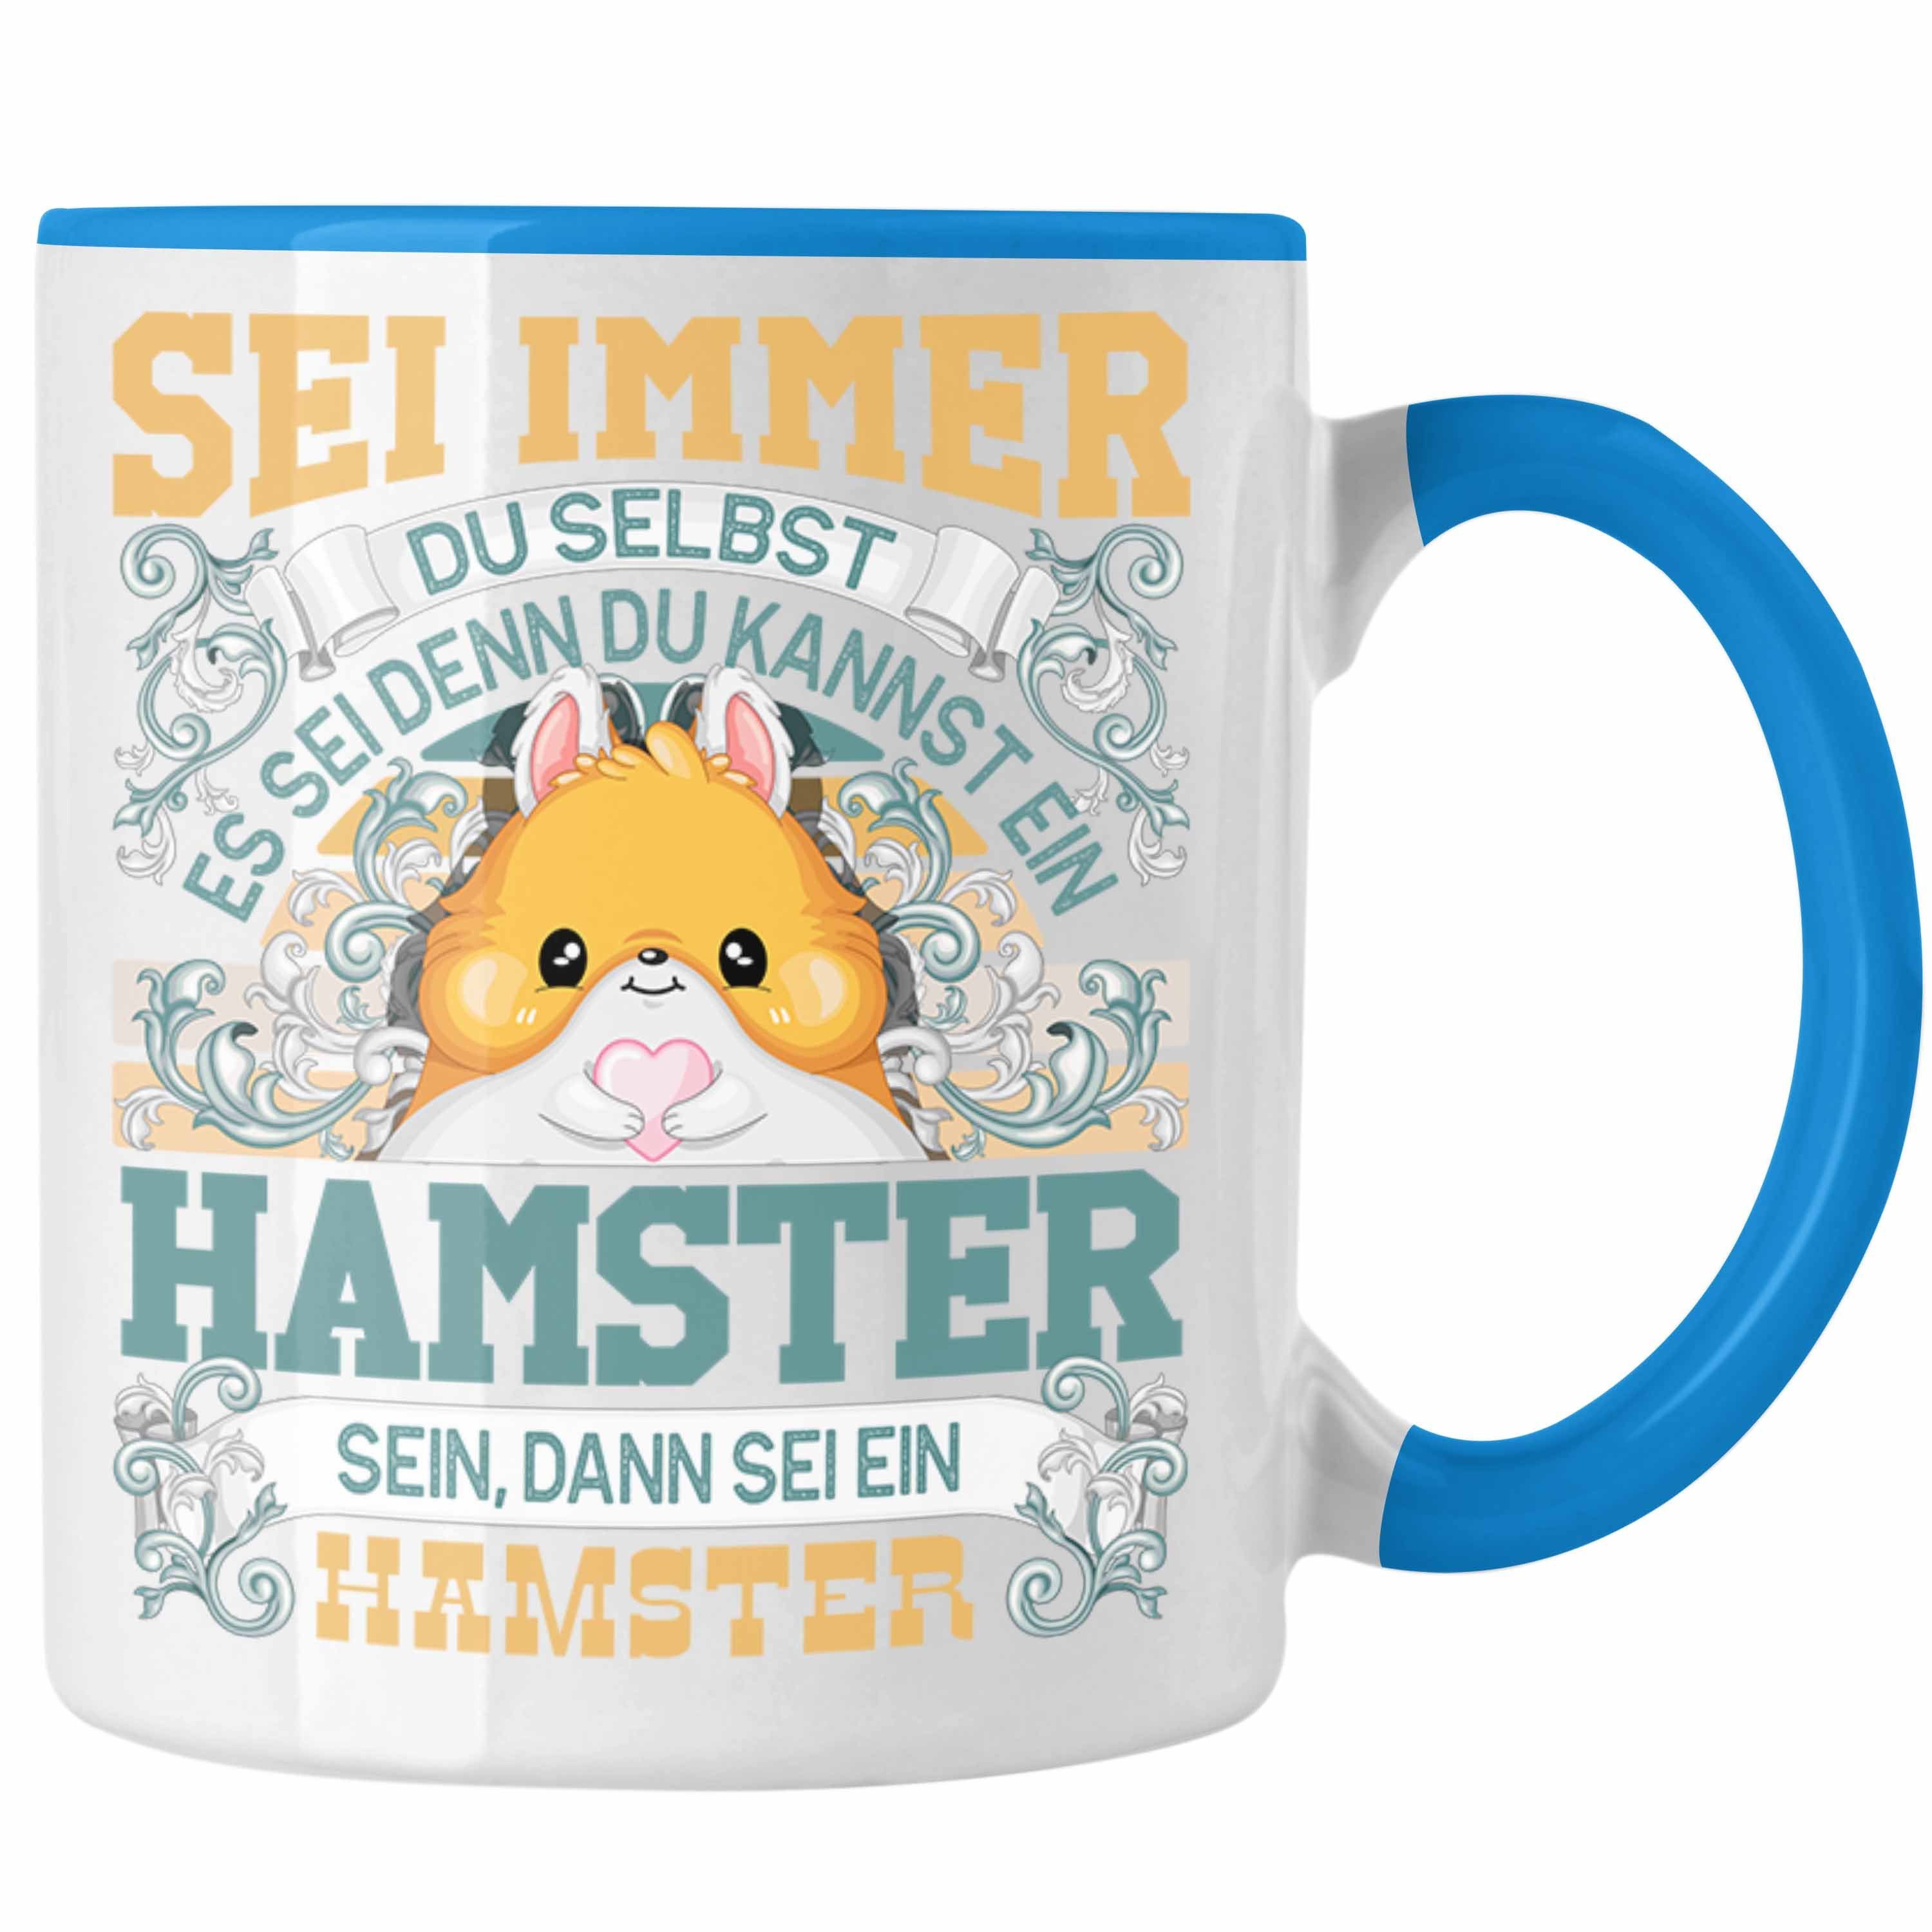 Trendation Tasse Hamster Tasse Geschenk Hamster Liebhaber Sei immer Du Selbst Spruch Blau